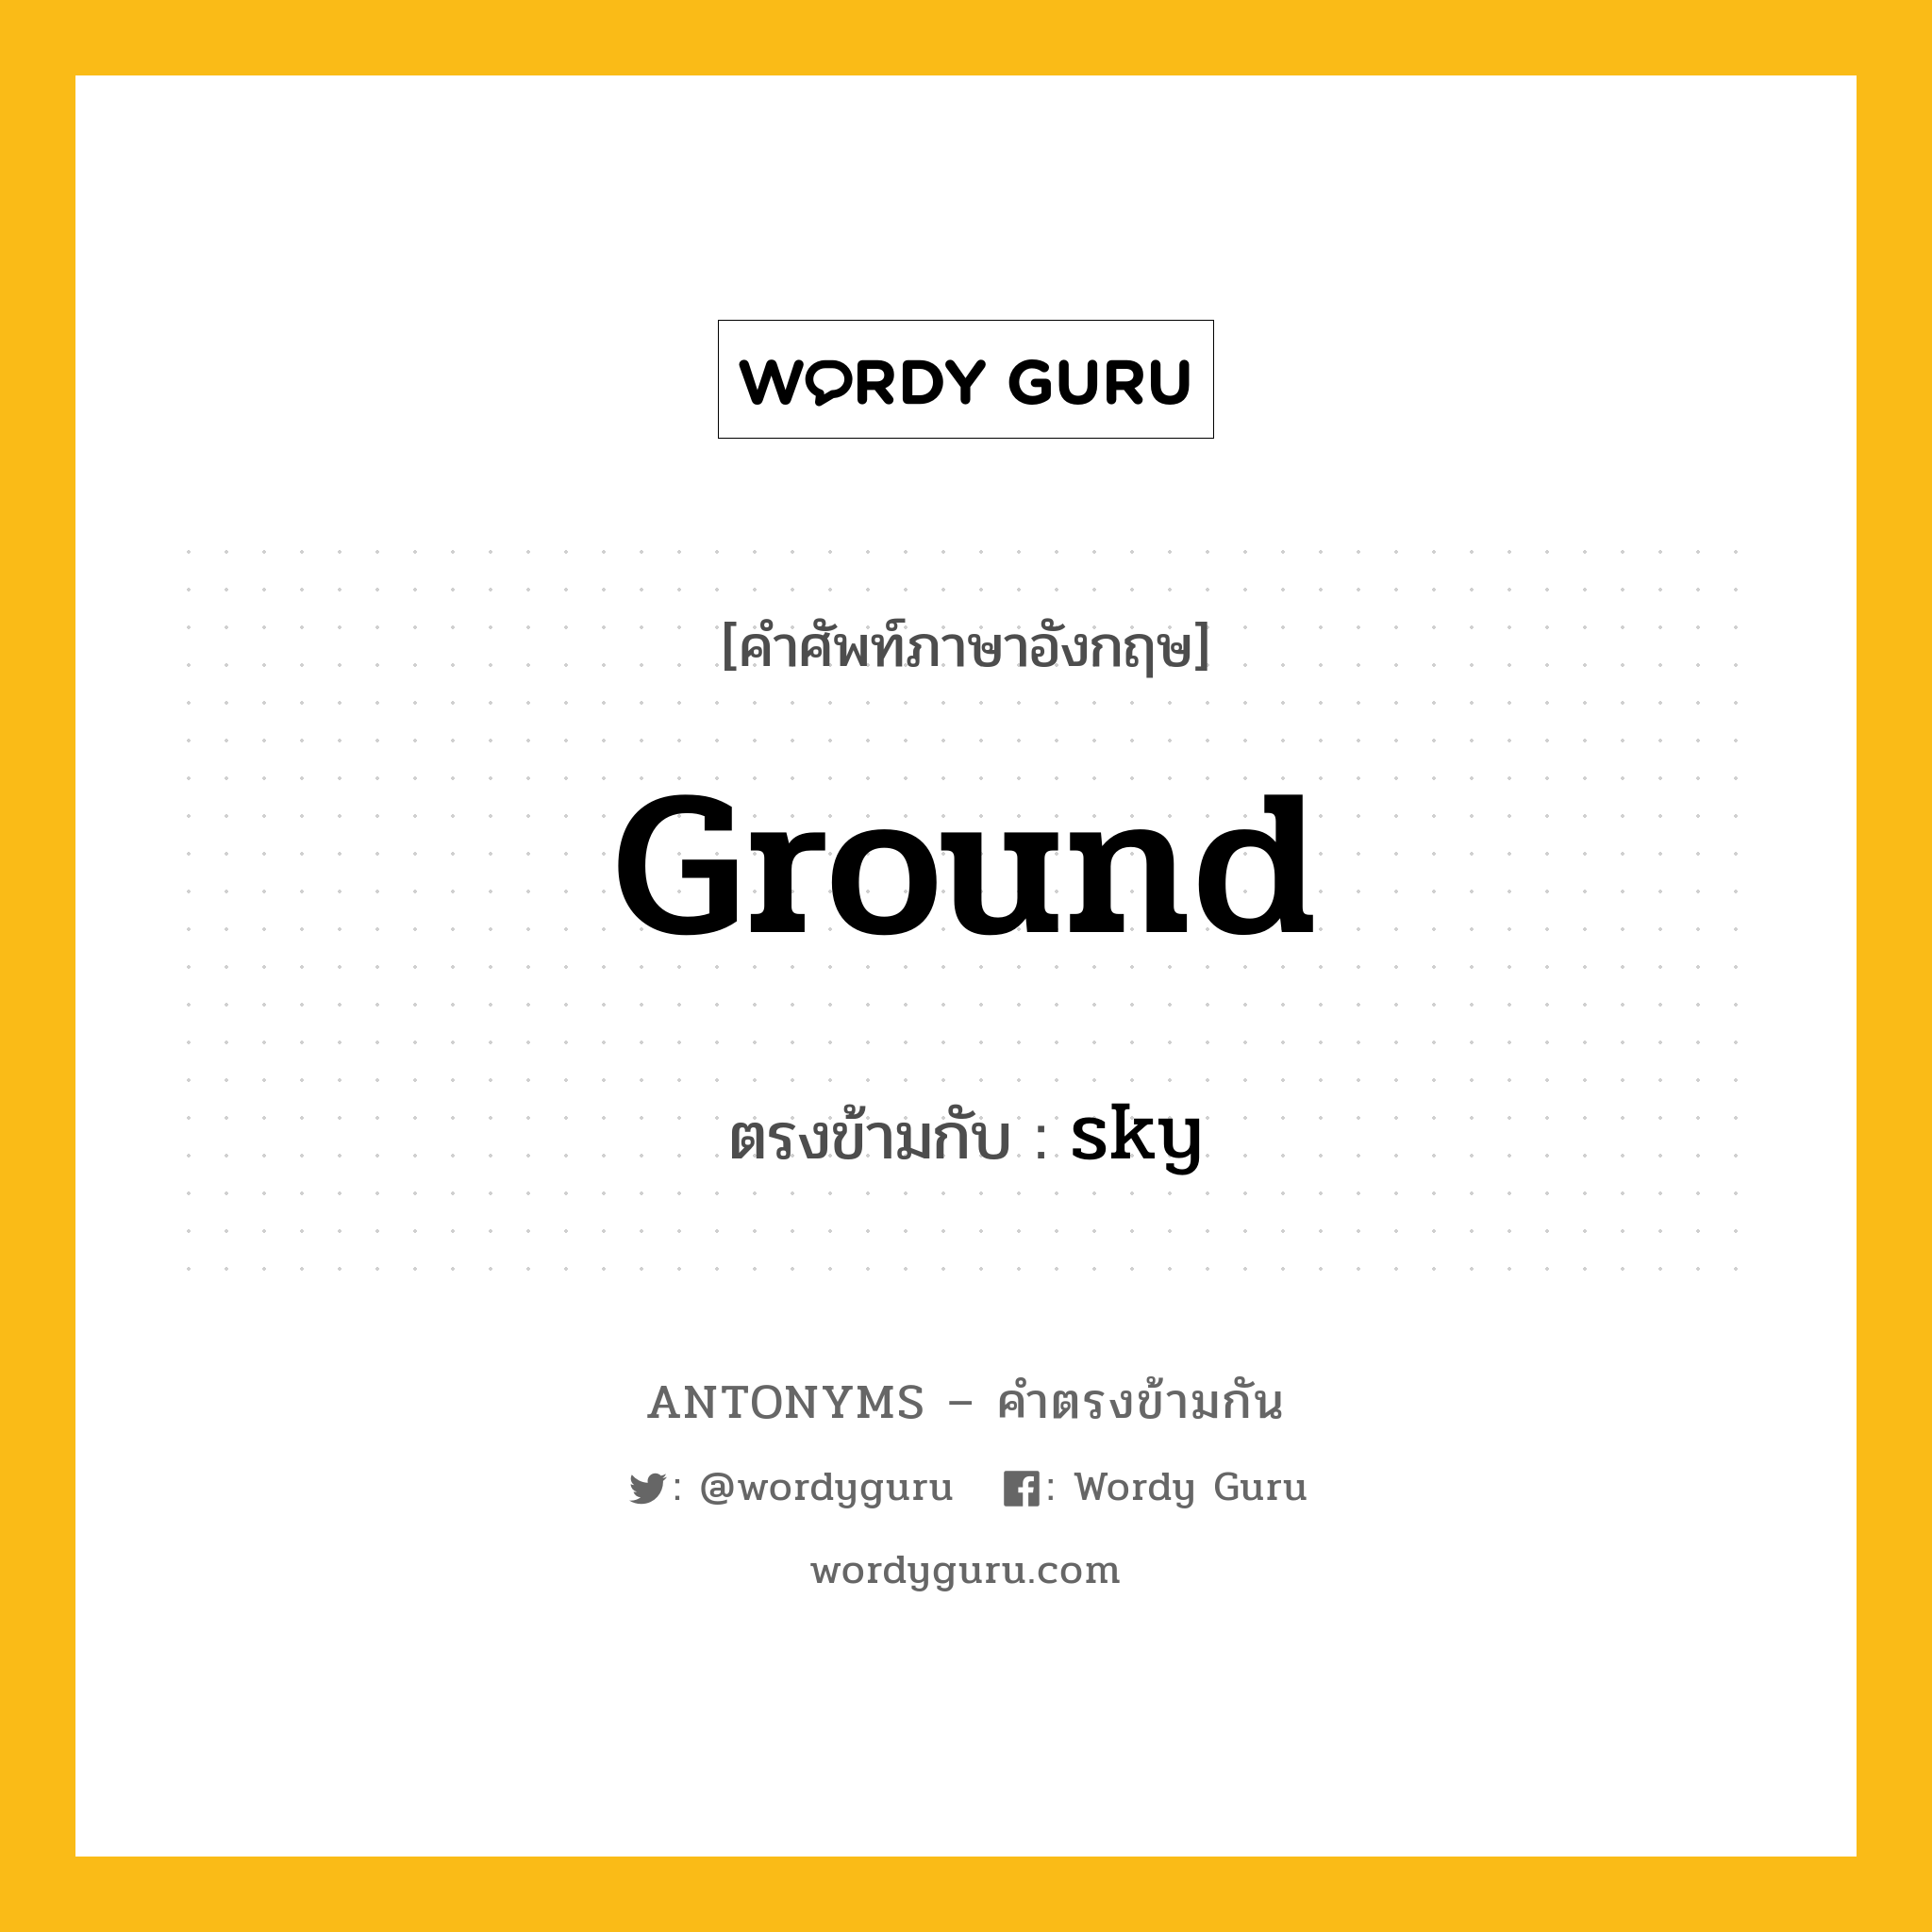 ground เป็นคำตรงข้ามกับคำไหนบ้าง?, คำศัพท์ภาษาอังกฤษ ground ตรงข้ามกับ sky หมวด sky